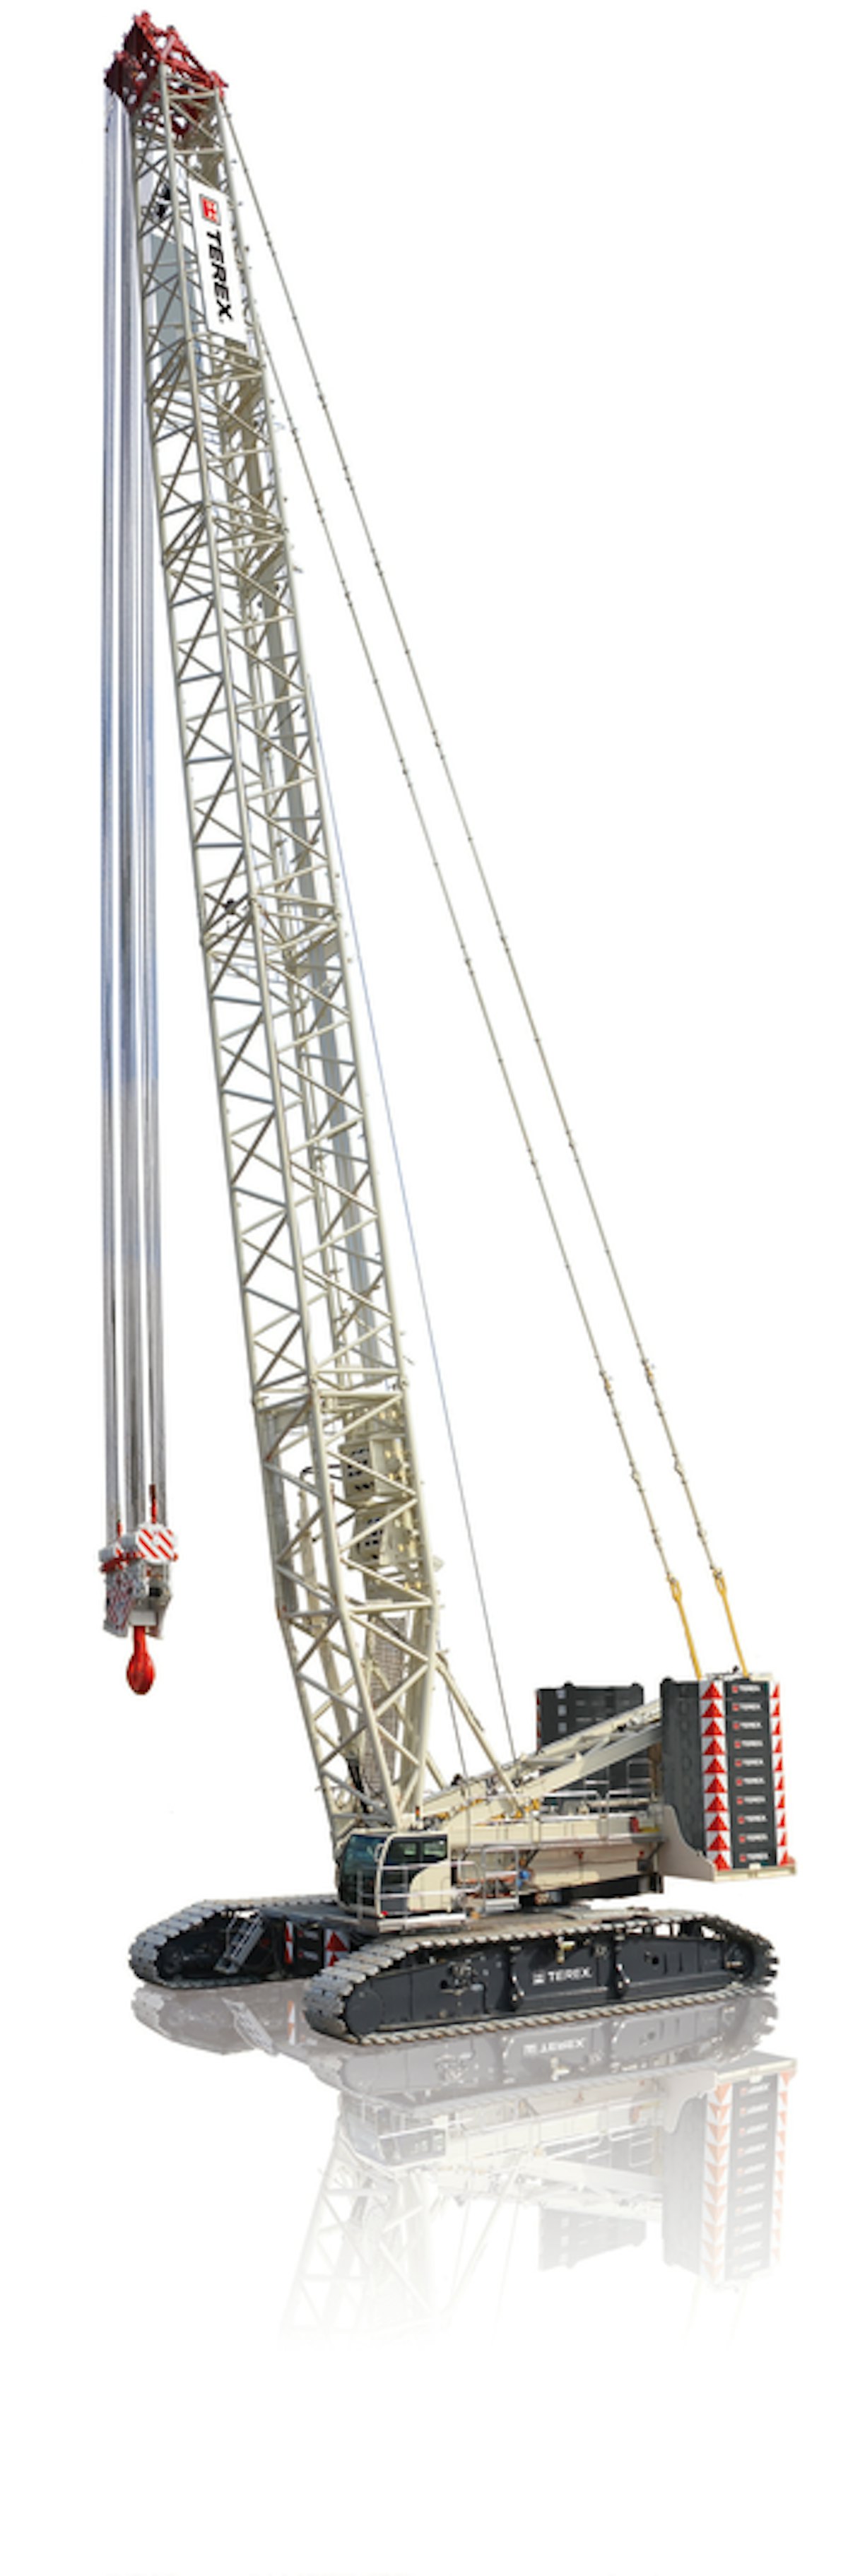 Superlift 3800 Lattice Boom Crawler Crane From: Terex Construction Americas